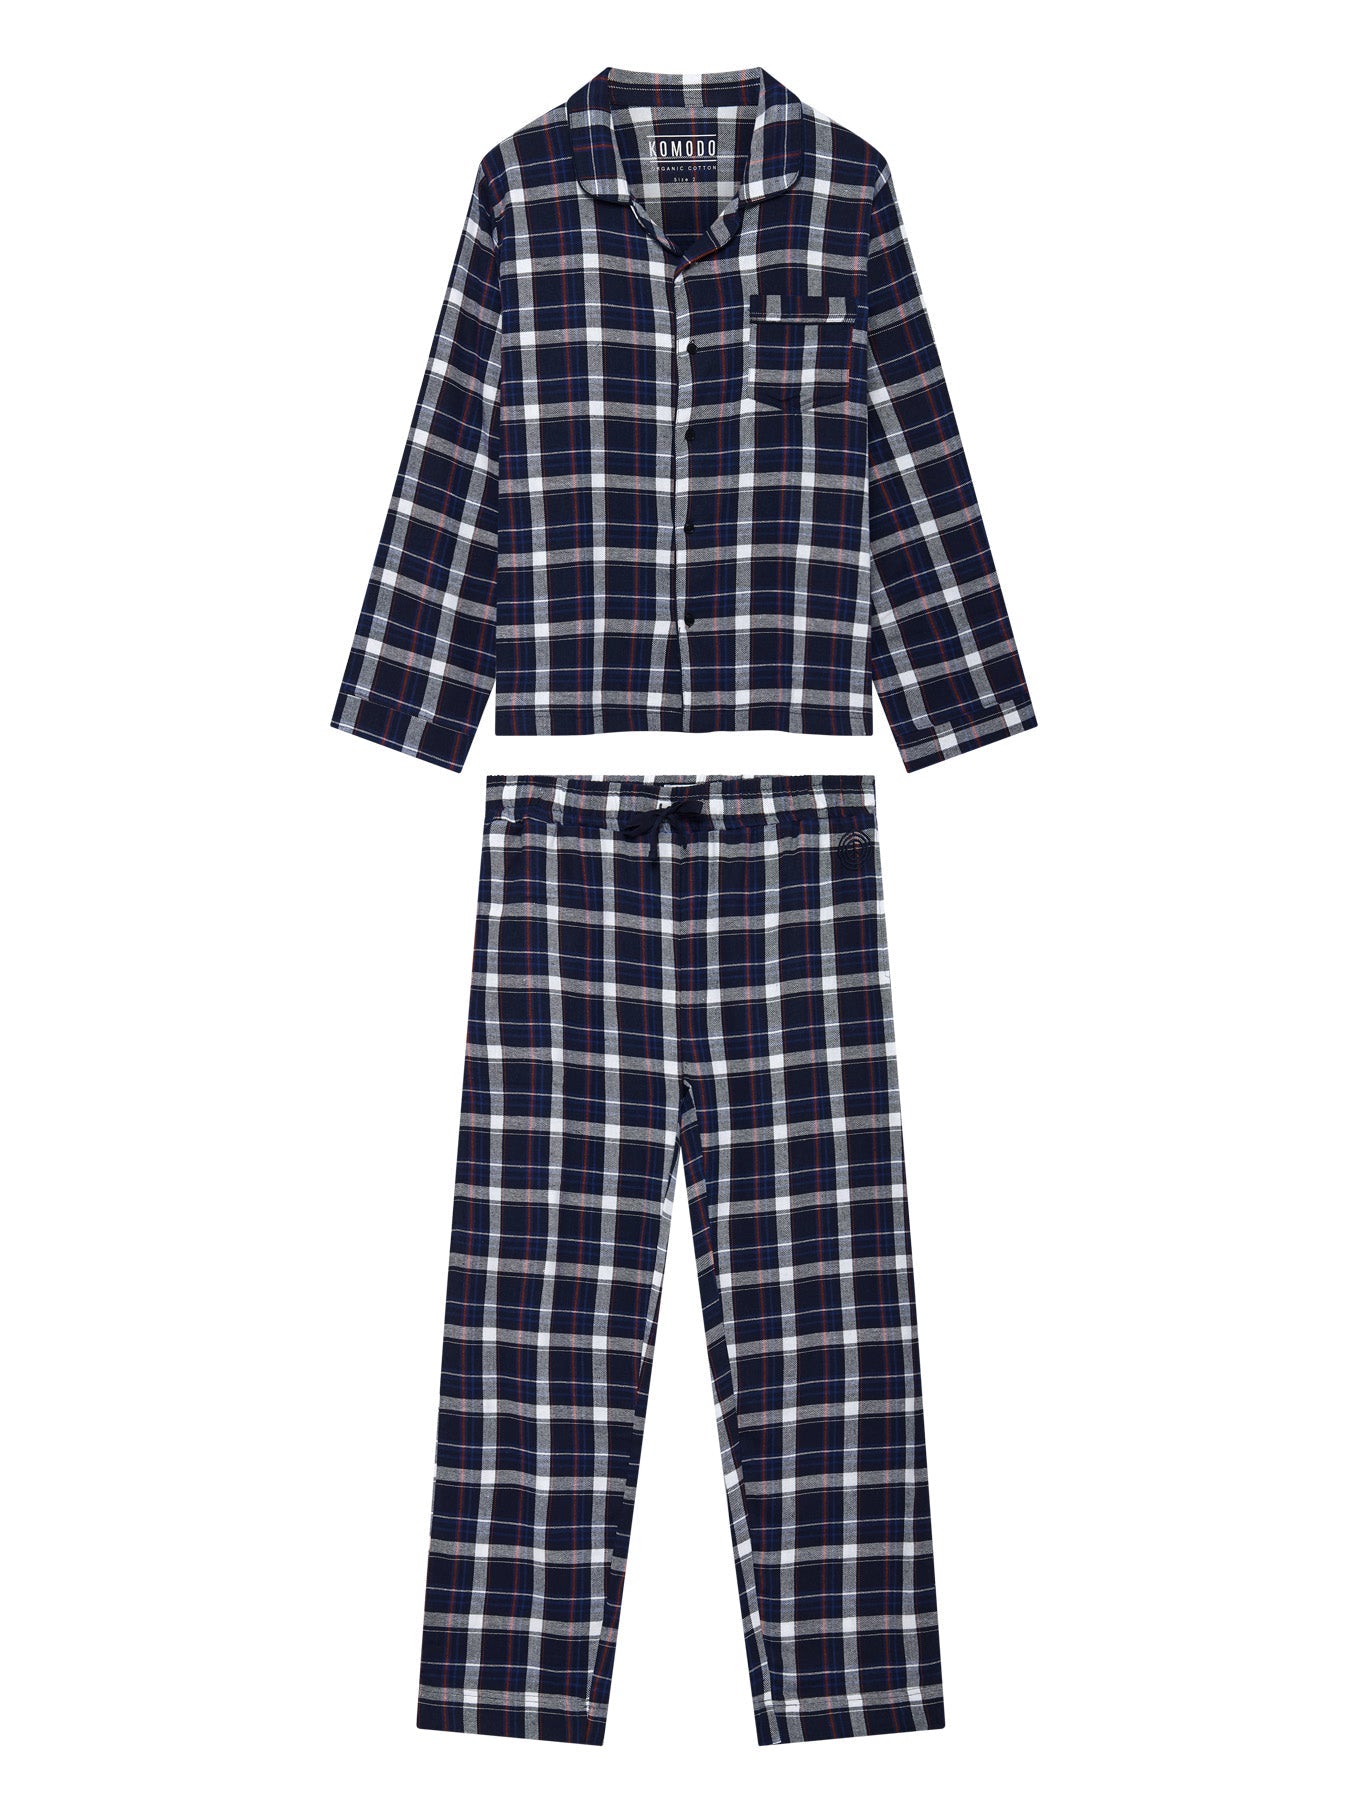 Dunkelblaues Pyjama JIM JAM aus 100% Bio-Baumwolle von Komodo